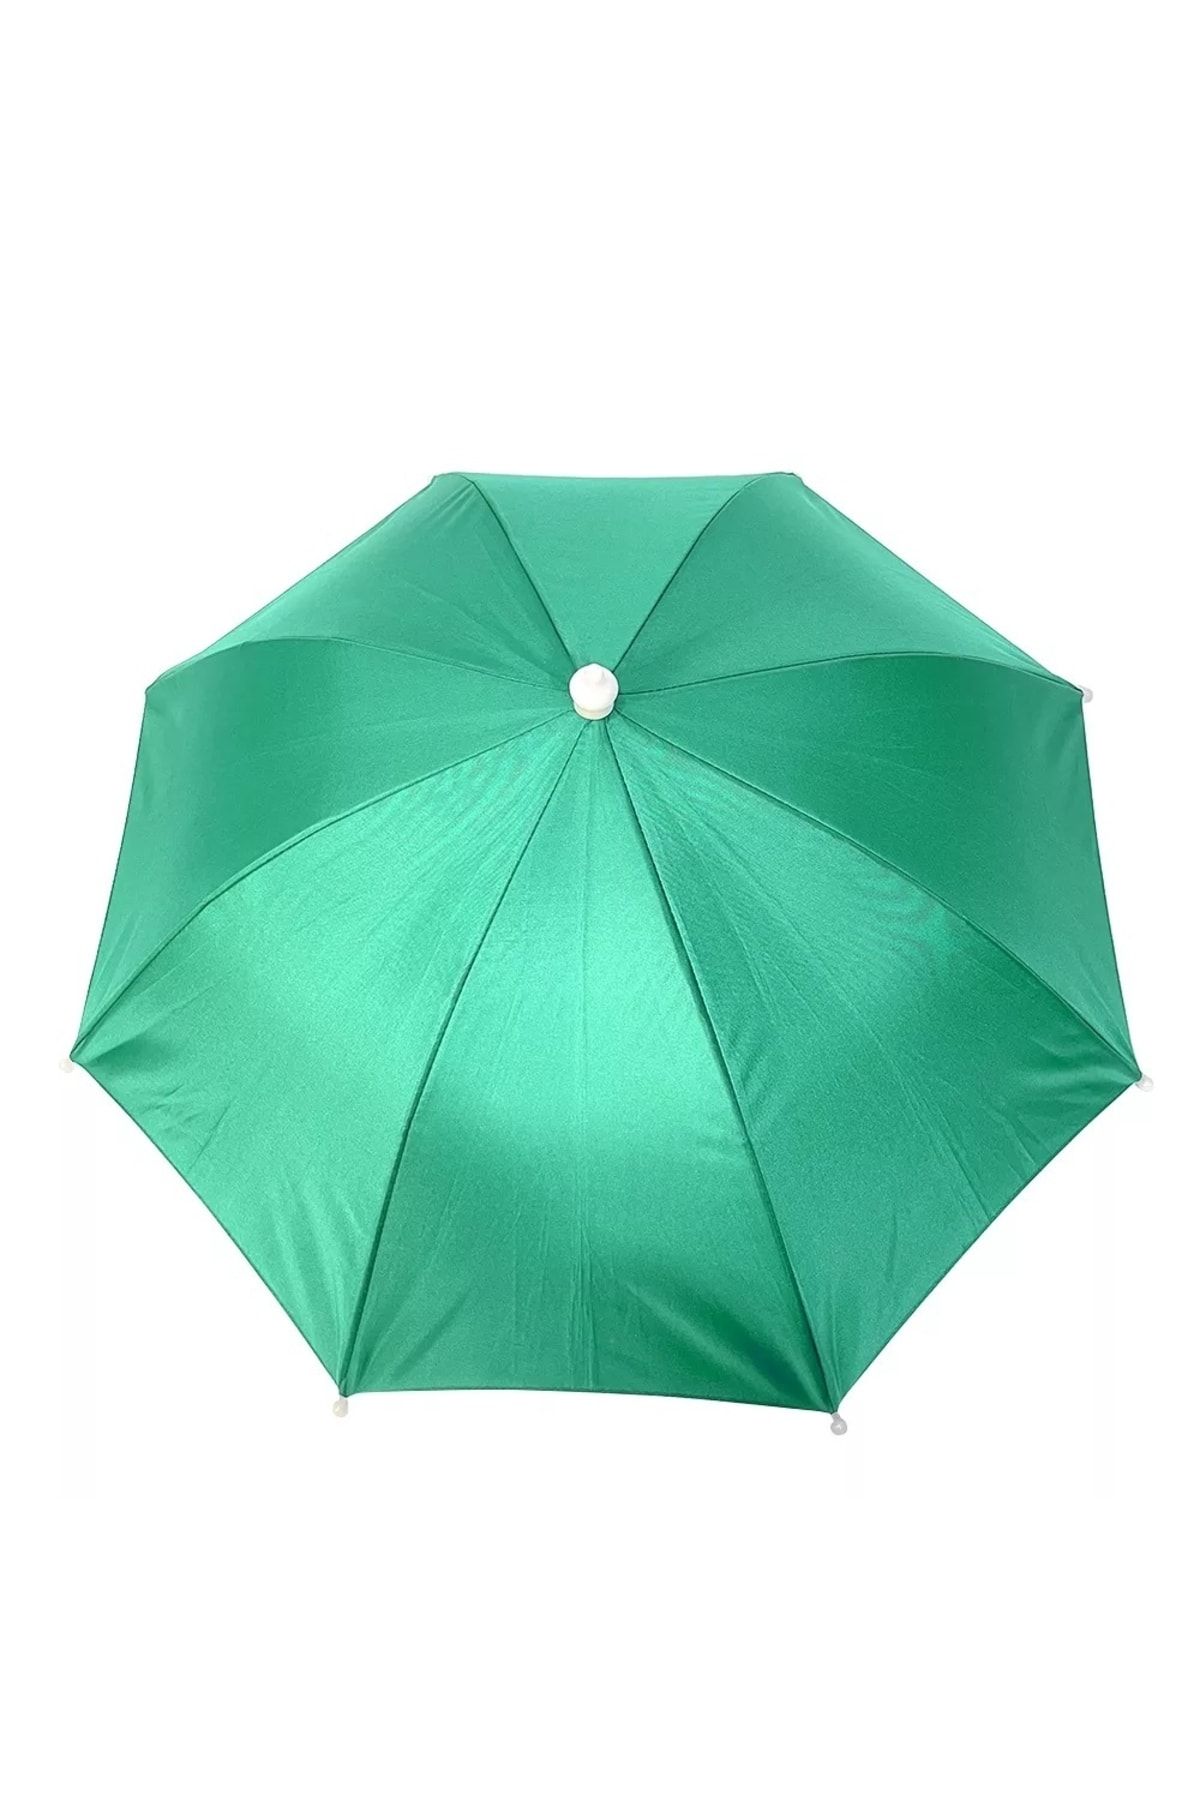 ELEVEN MARKETS Kafa Şemsiyesi Yeşil Yazlık Plaj Güneş Şemsiyesi Unisex